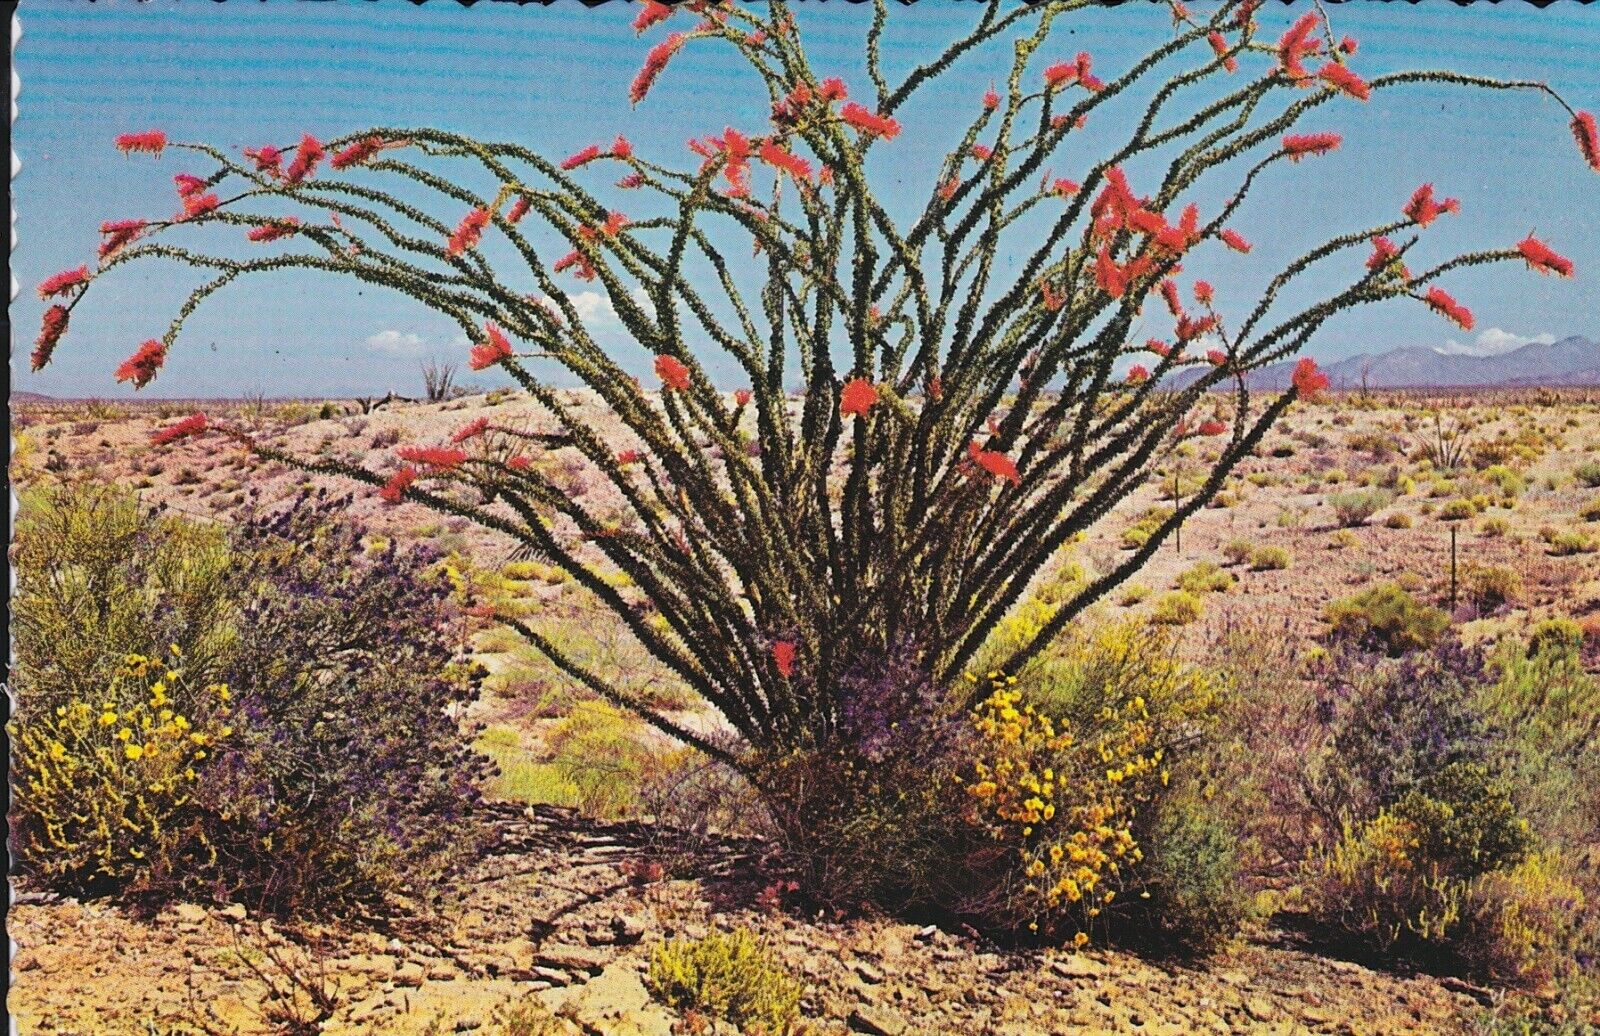 Postcard Ocotillo Blooms 3.5 X 5.5 Unused Vintage by Petley Studios Red Flowers